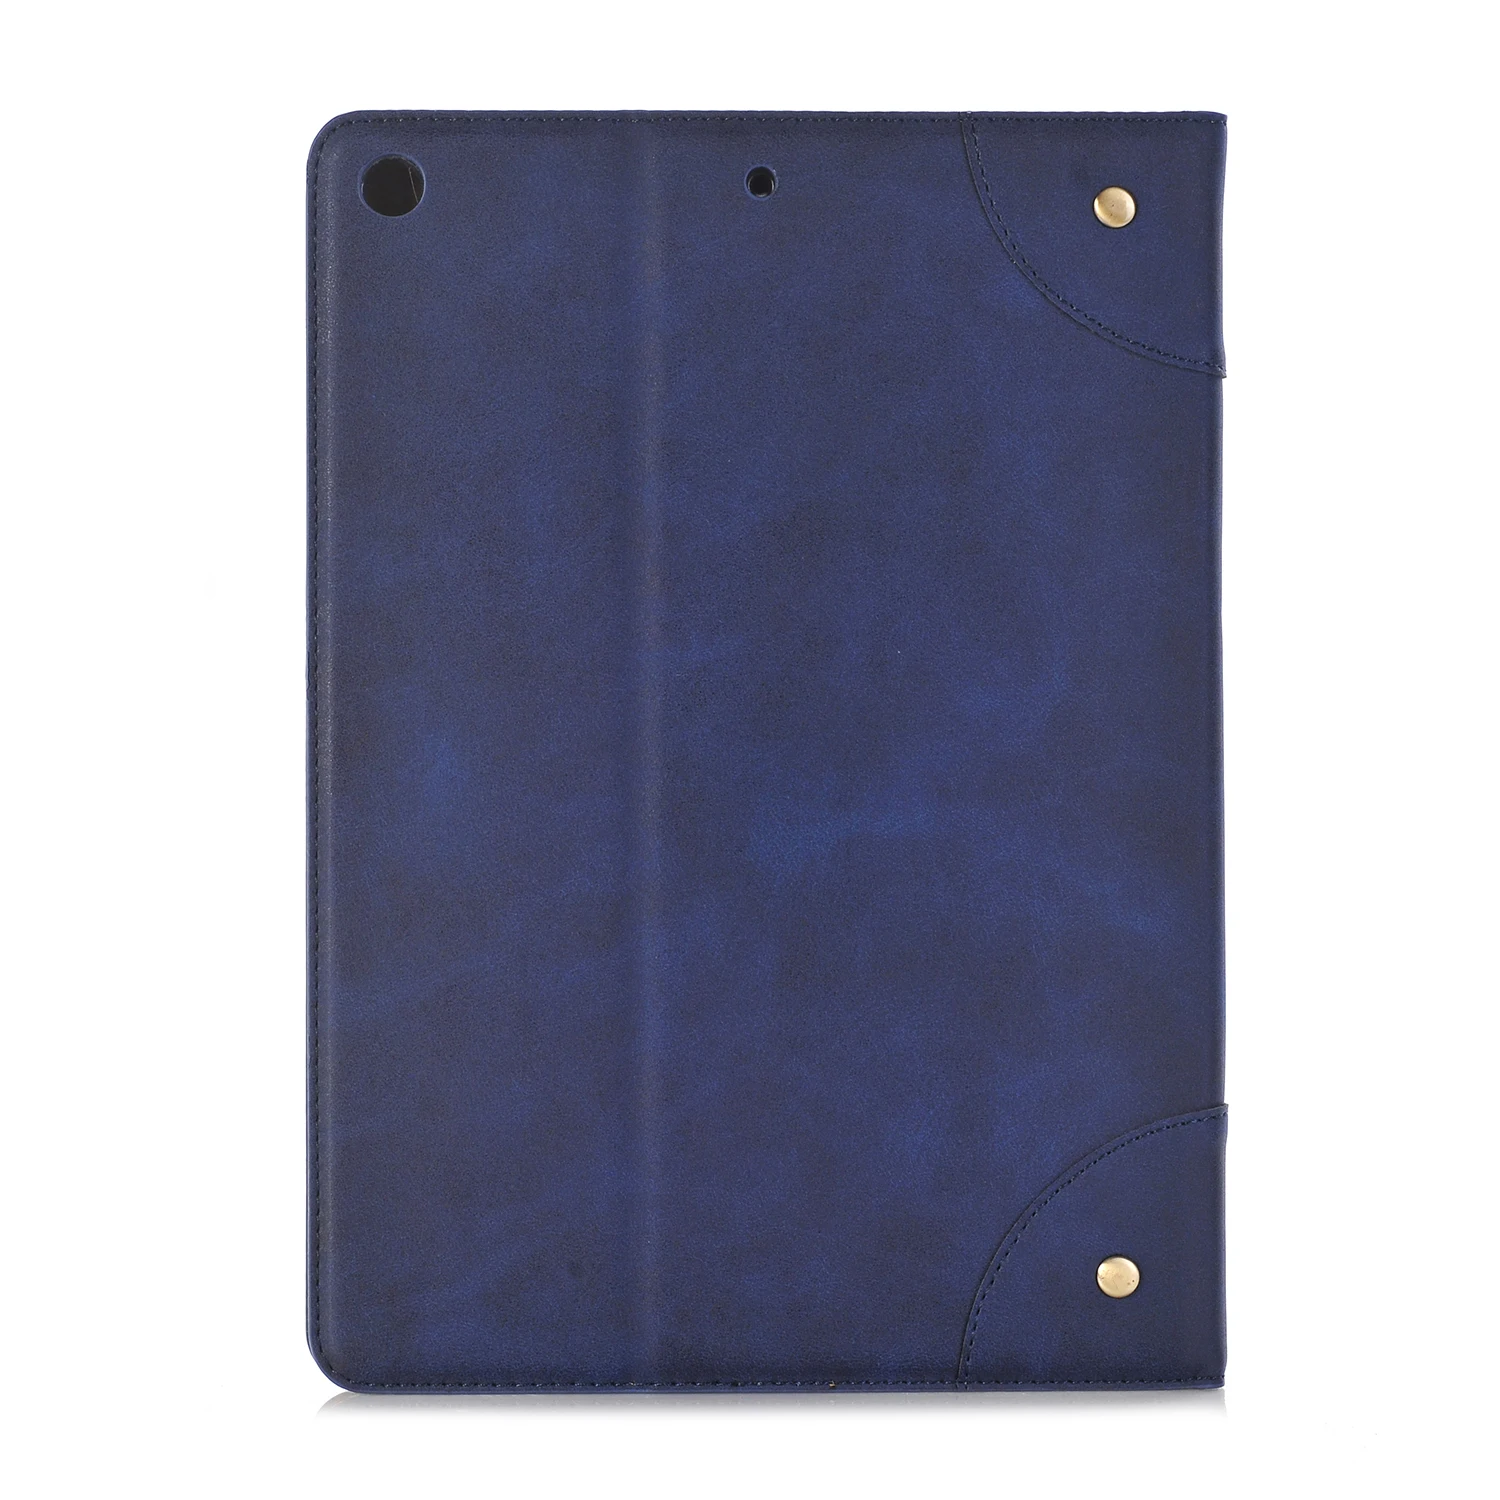 Чехол в стиле ретро для iPad 7 10,2 чехол A2200 A2197 A2198 из искусственной кожи с подставкой и отделением для карт противоударный чехол для iPad 7 10,2 чехол